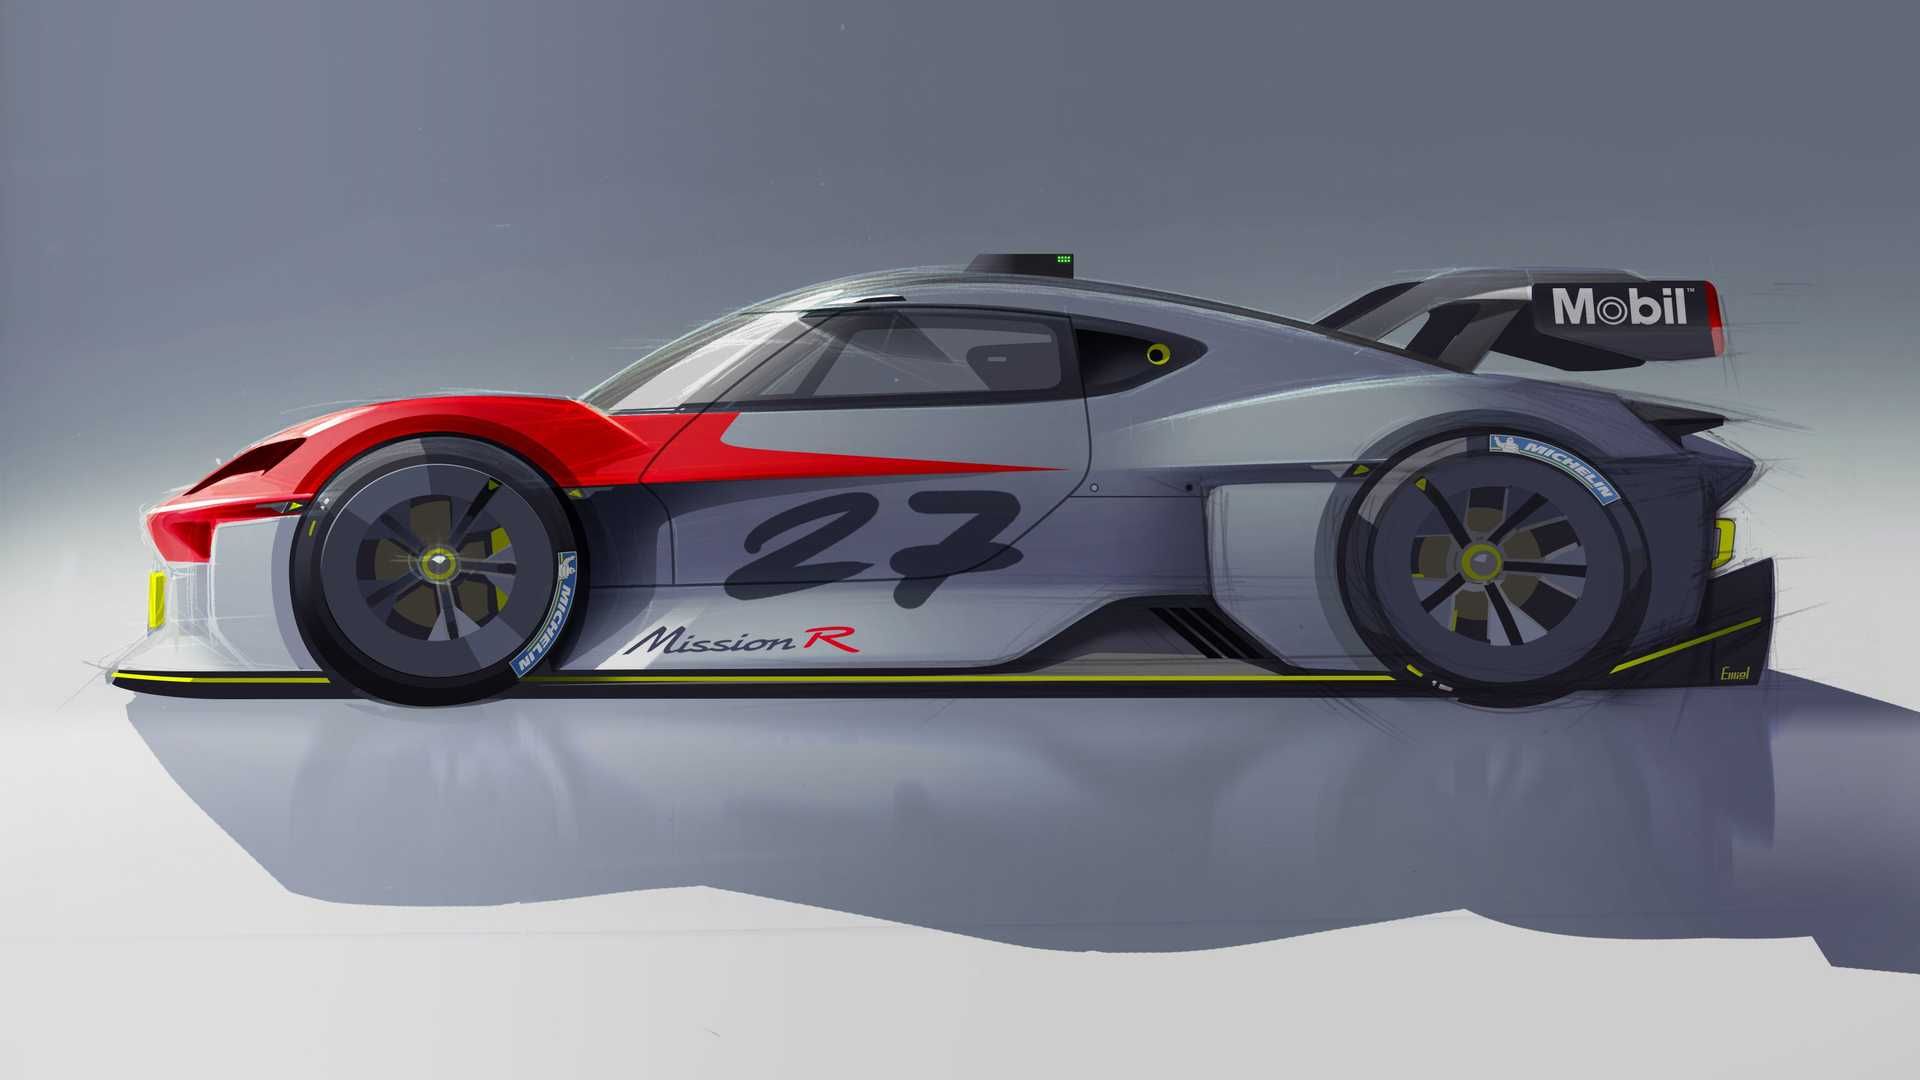 نمای جانبی خودروی الکتریکی مفهومی پورشه میشن آر / Porsche Mission R Concept EV